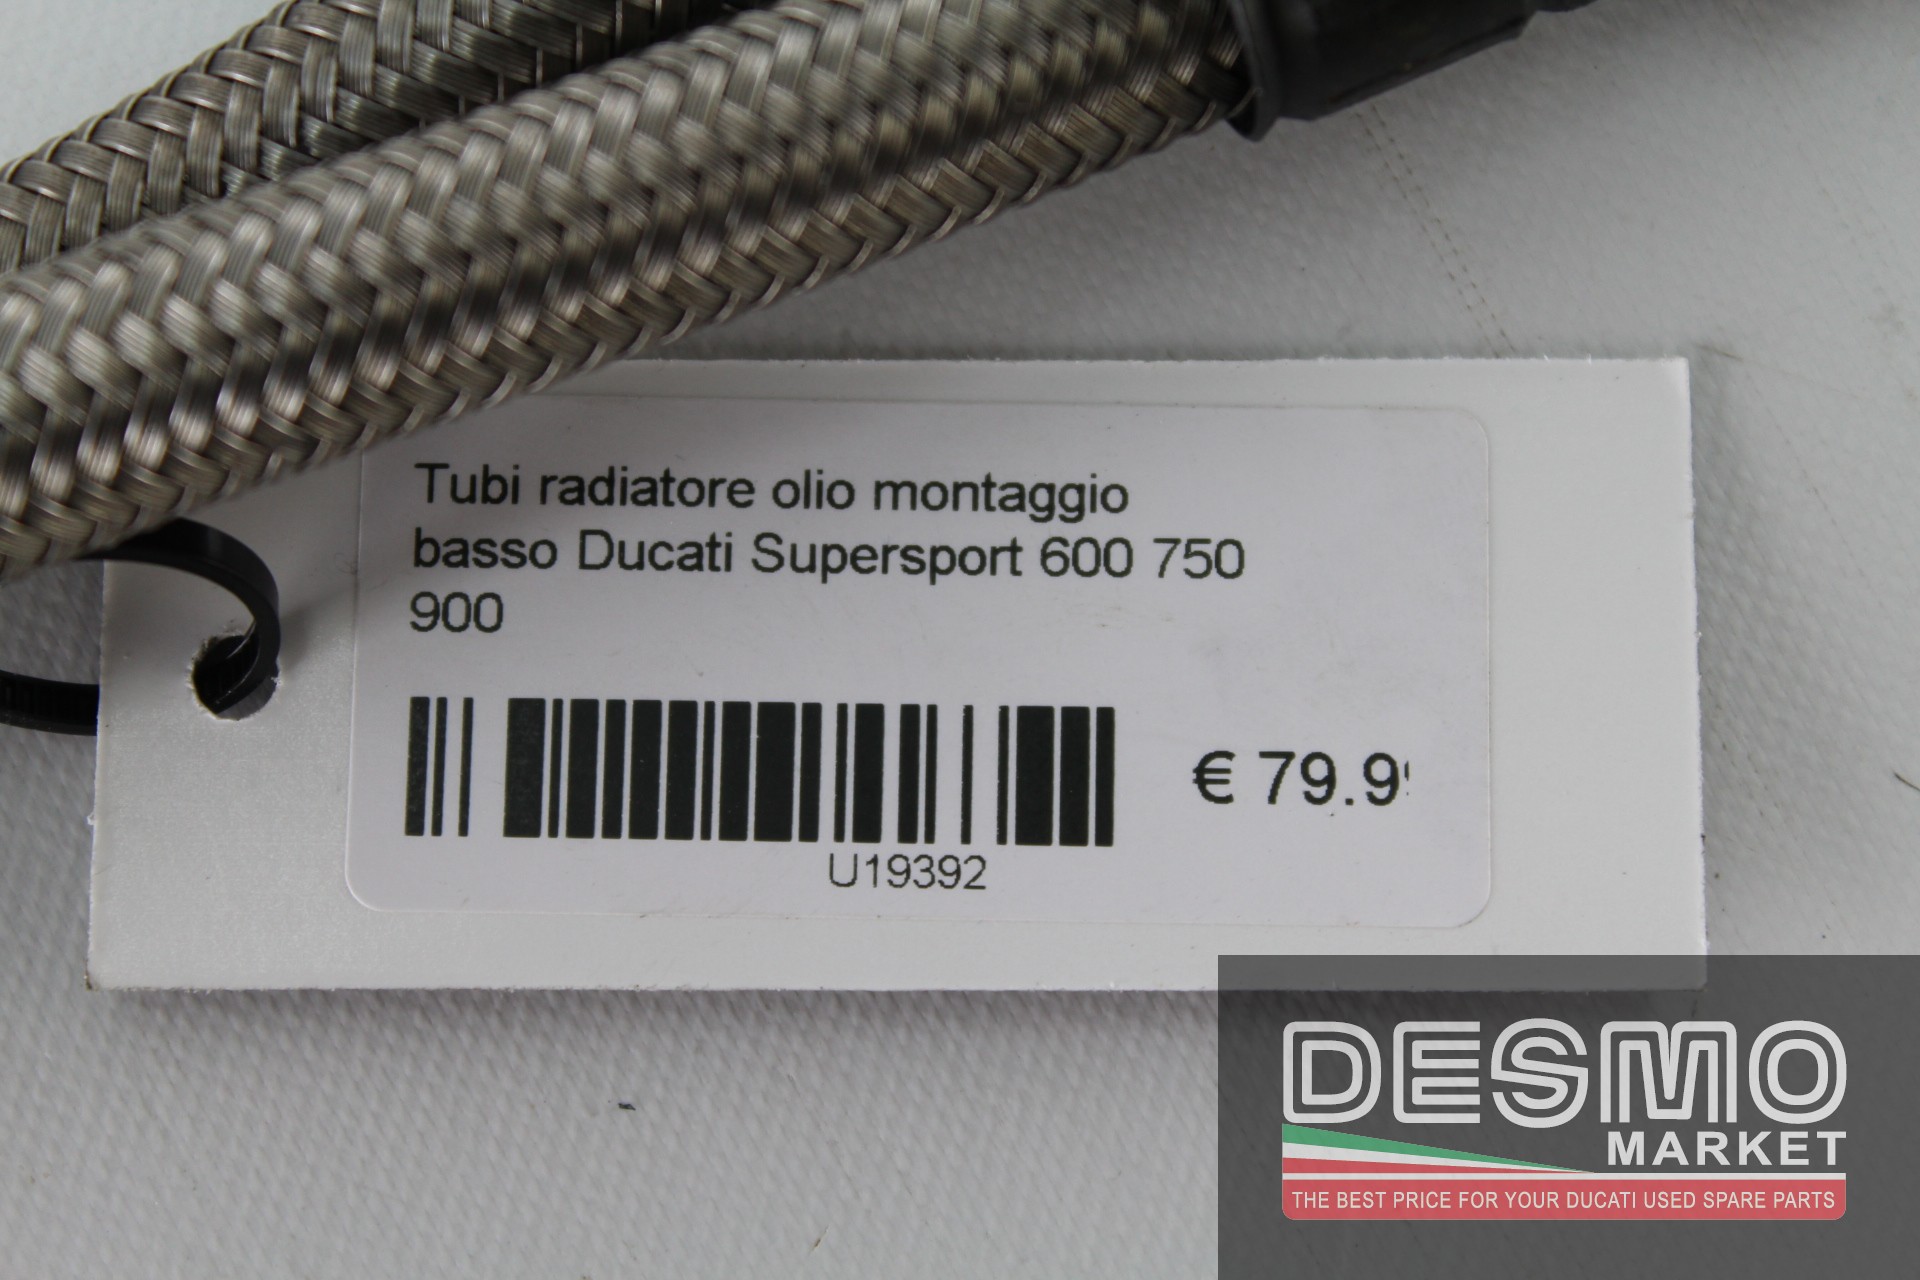 Tubi radiatore olio montaggio basso Ducati Supersport 600 750 900